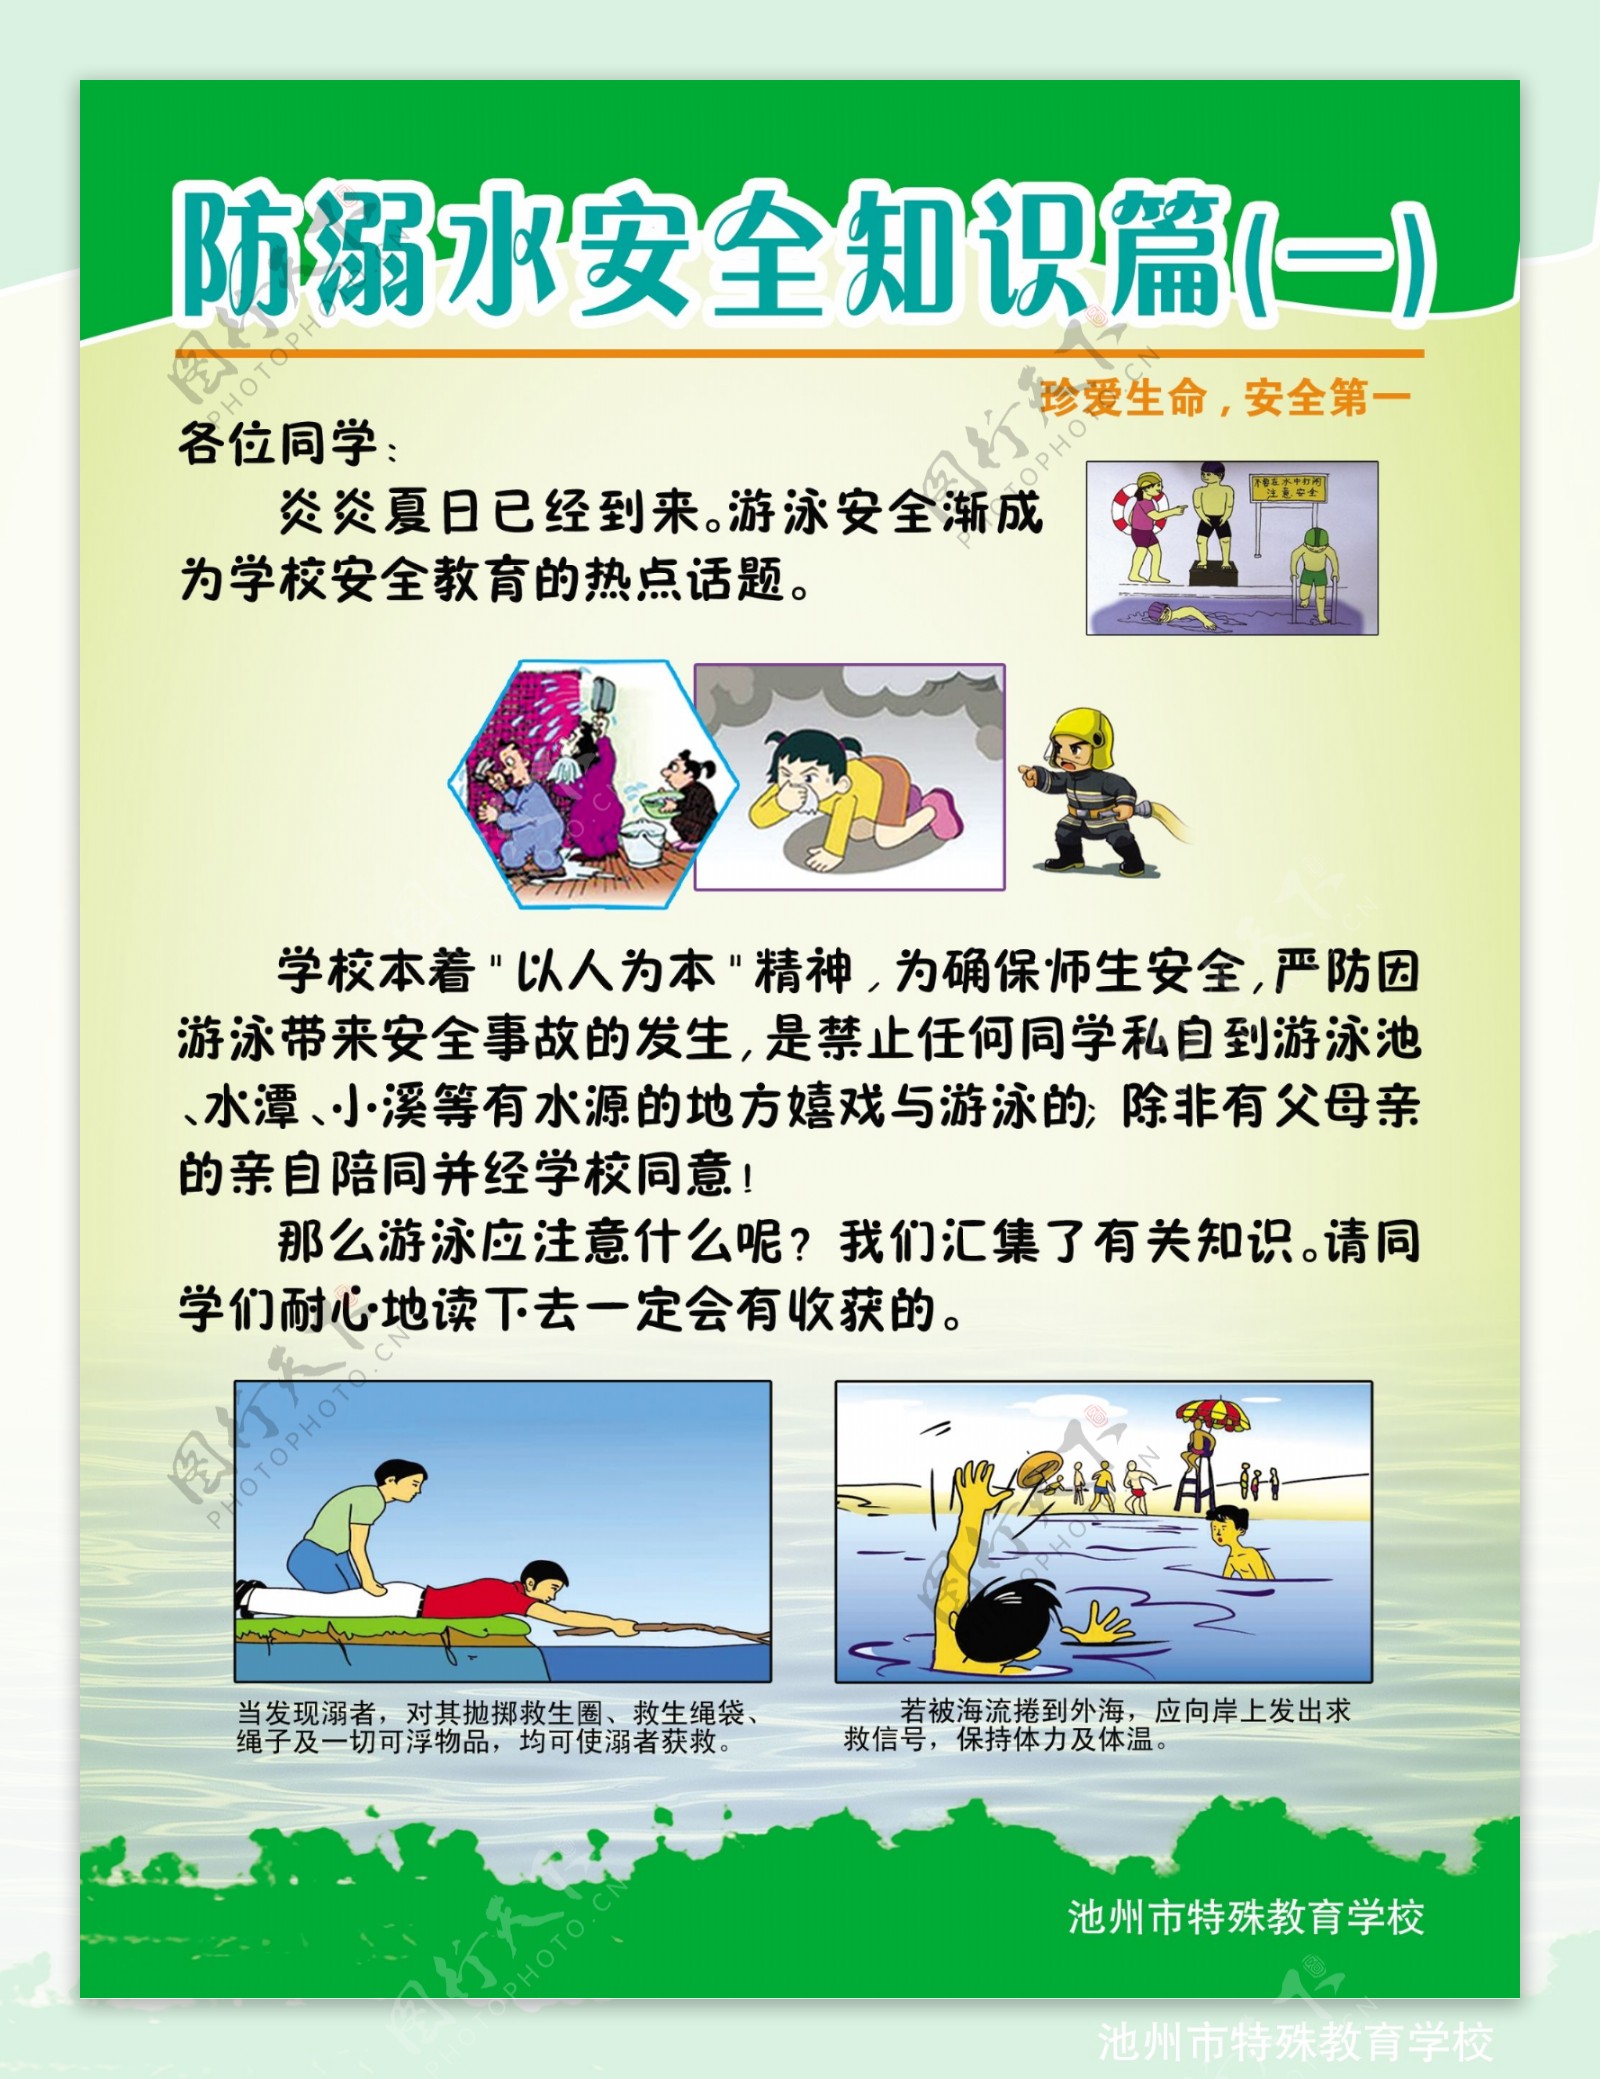 防溺水安全知识展板